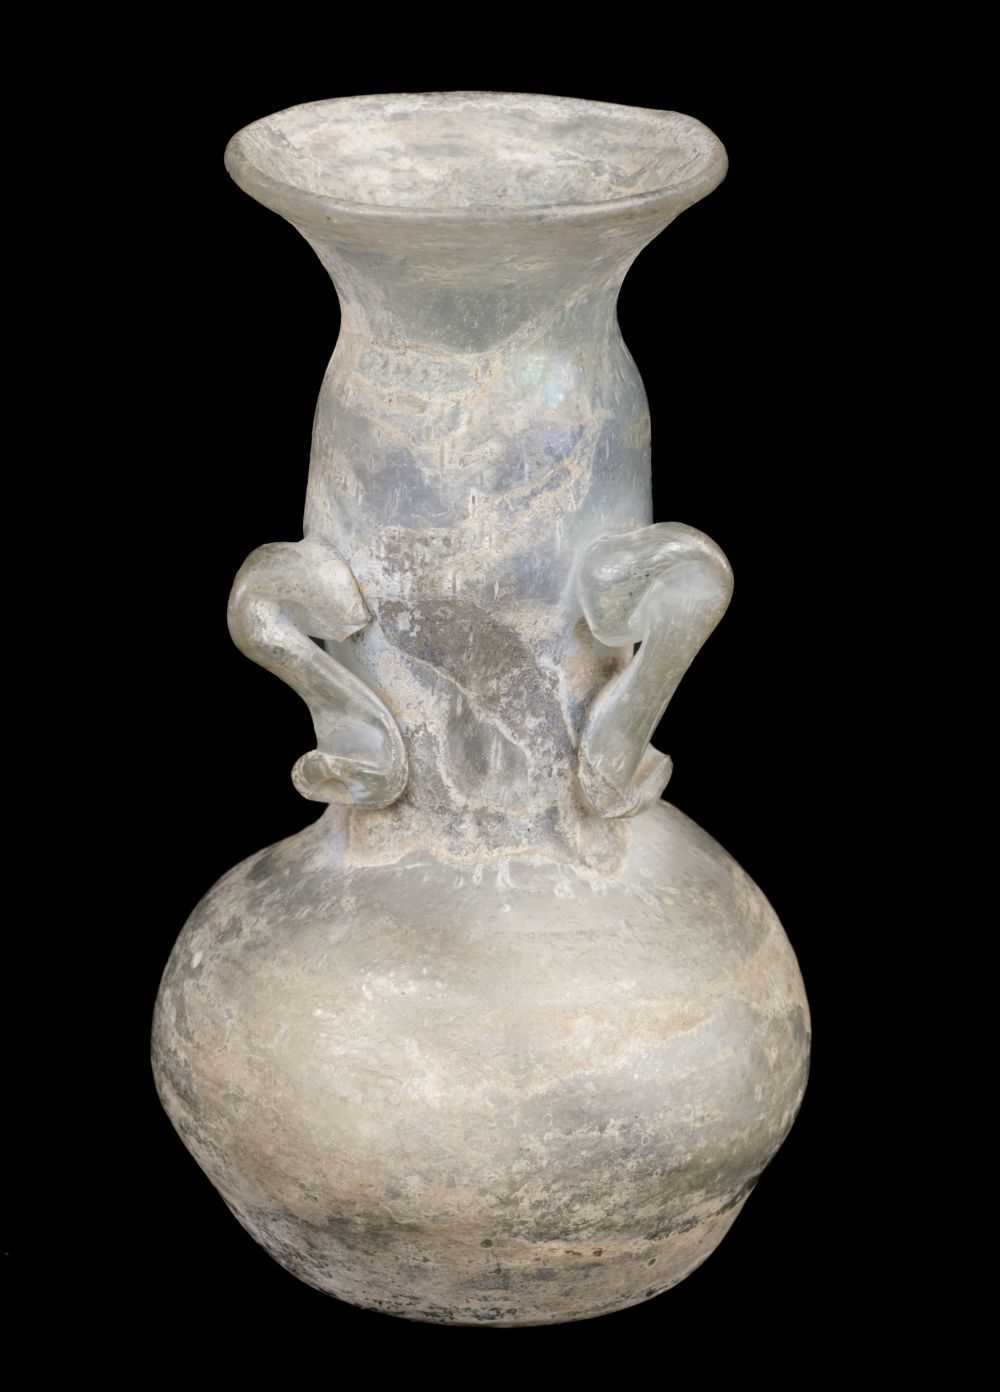 Lot 470 - Ancient Rome. A Roman glass vase